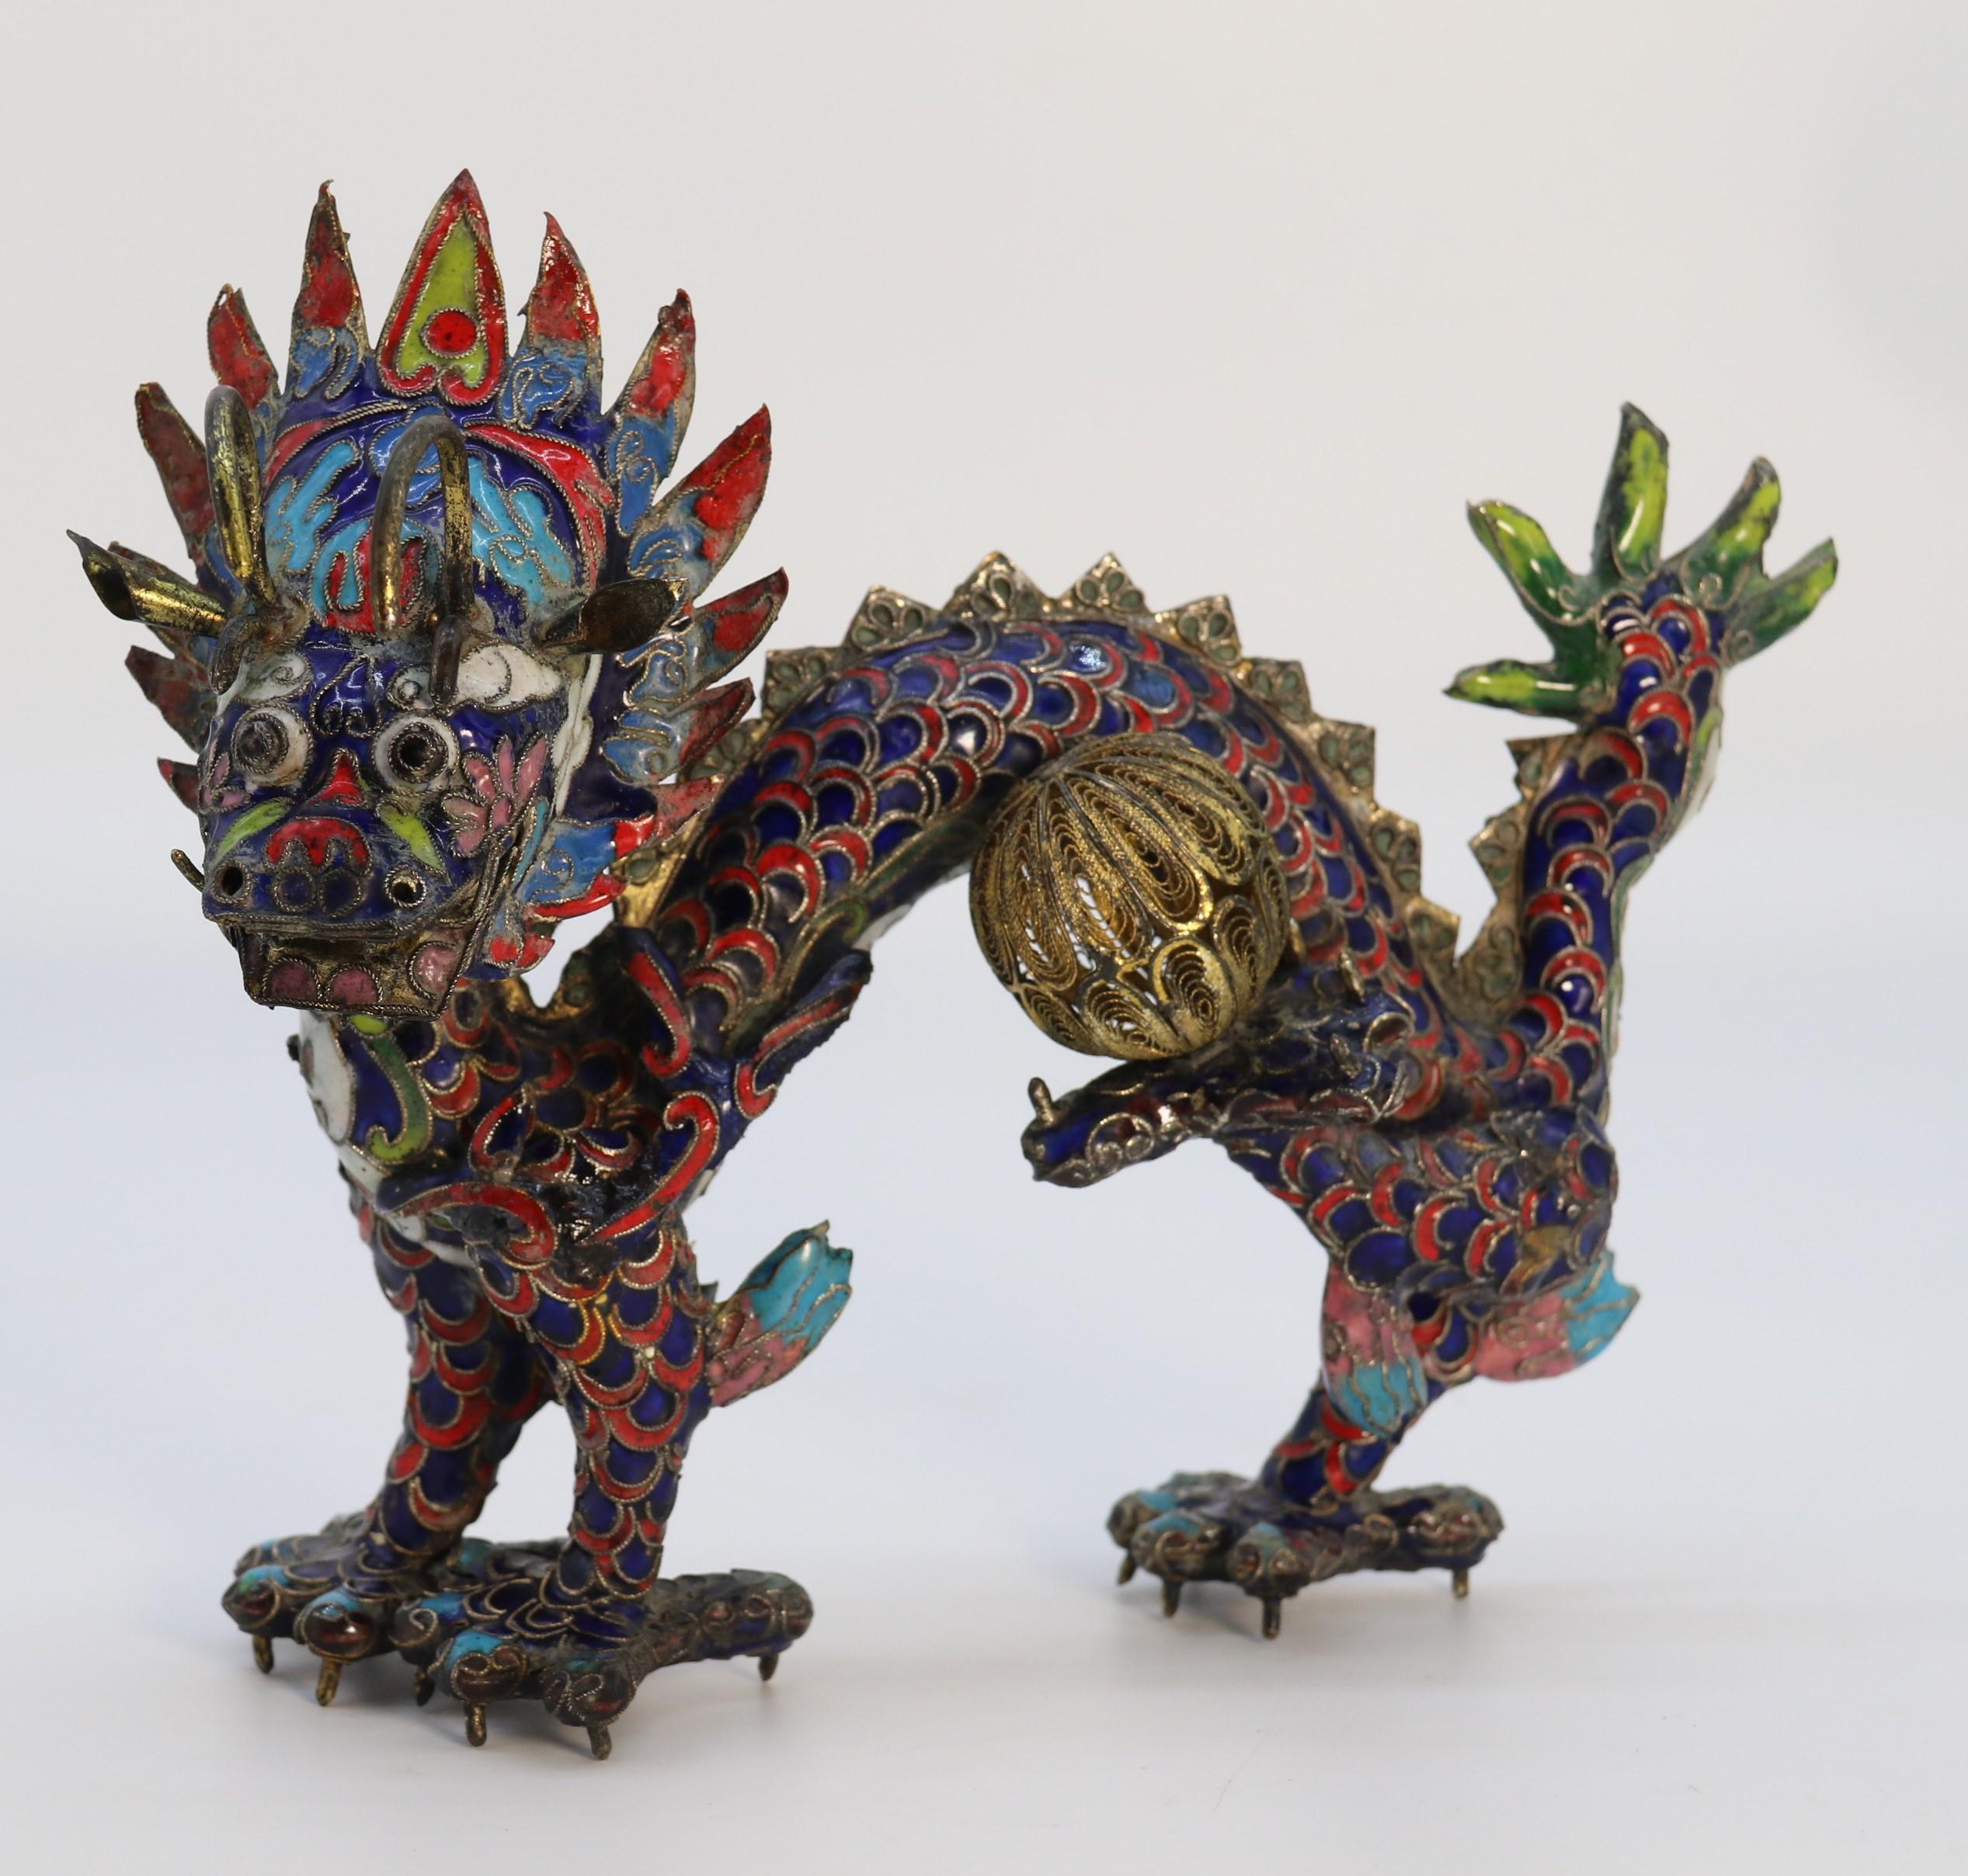 Sculpture décorative chinoise en cloisonné du début du 20e siècle représentant un dragon à cinq griffes saisissant une balle.

Ce dragon brillant et inhabituel est une œuvre d'art chinoise datant d'environ 1930. Elle a été fabriquée à la main à